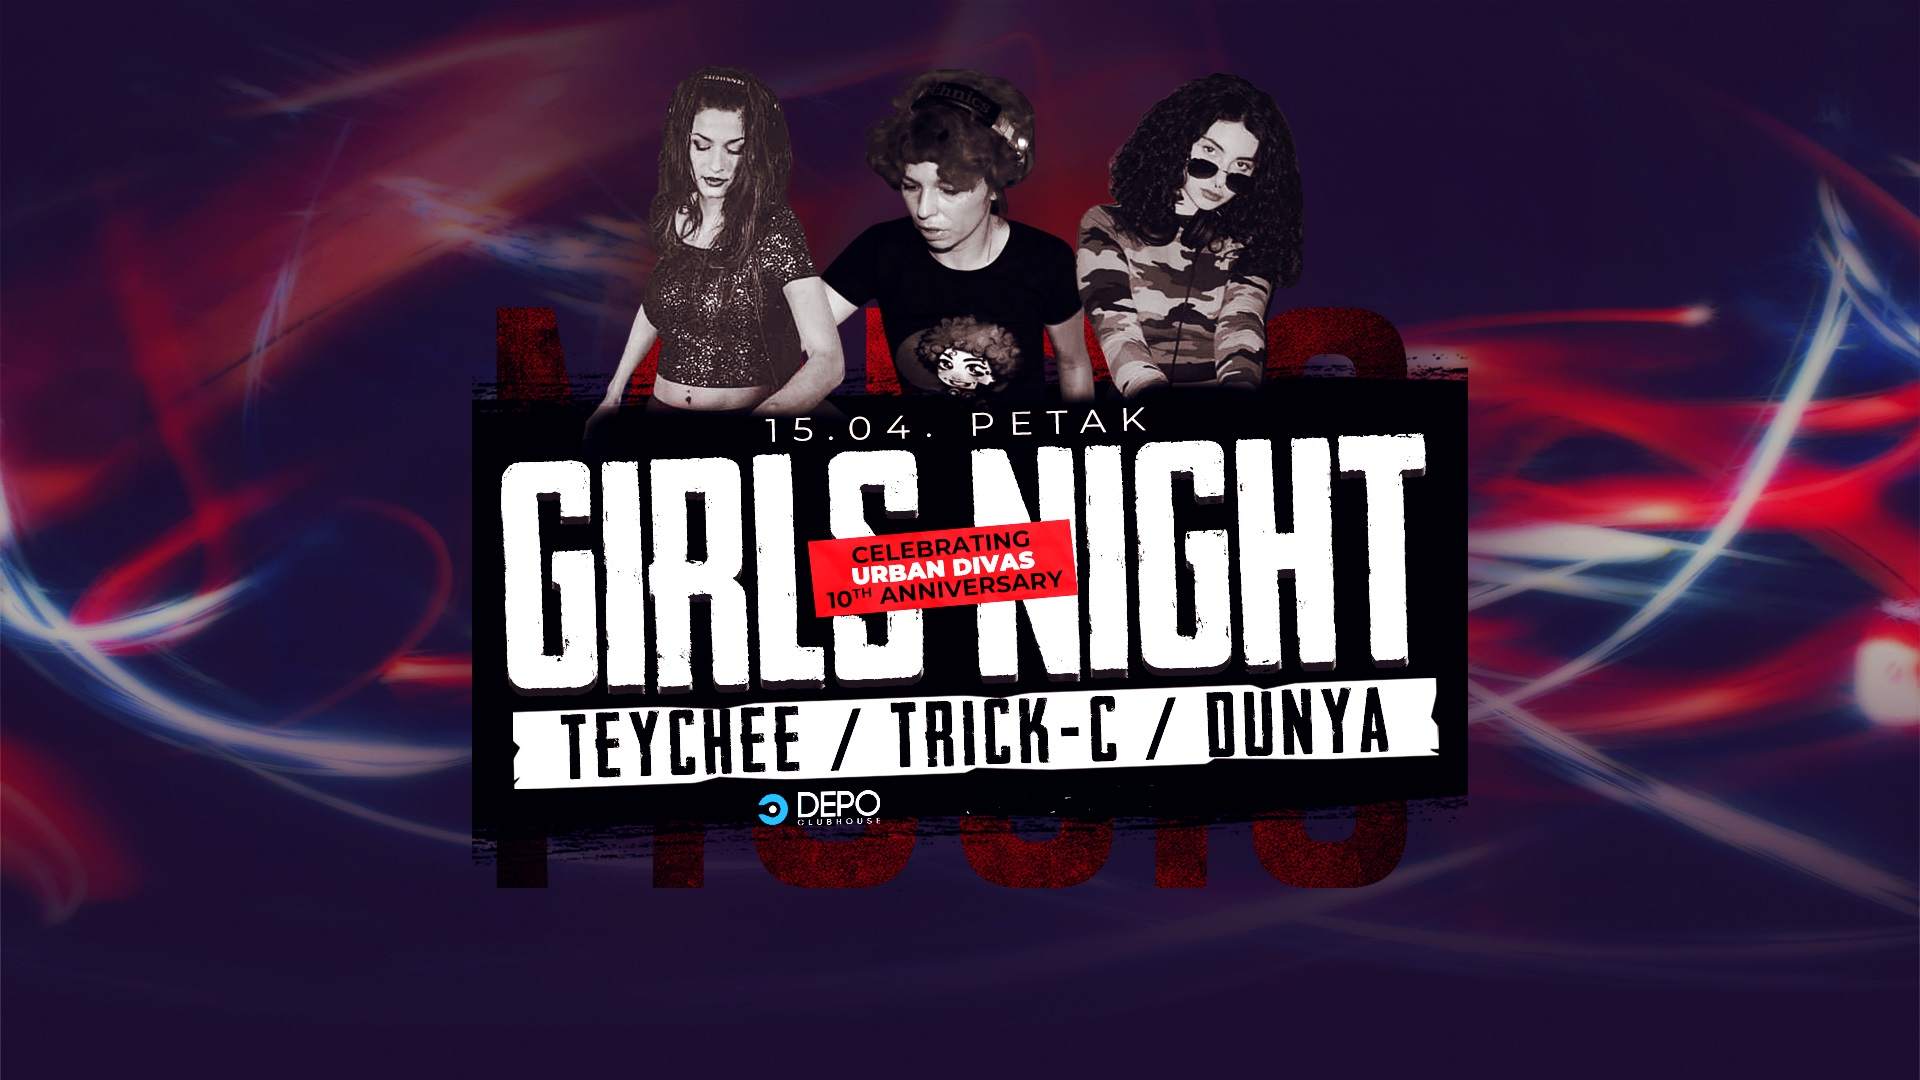 Girls Night at DEPOklub - フライヤー表